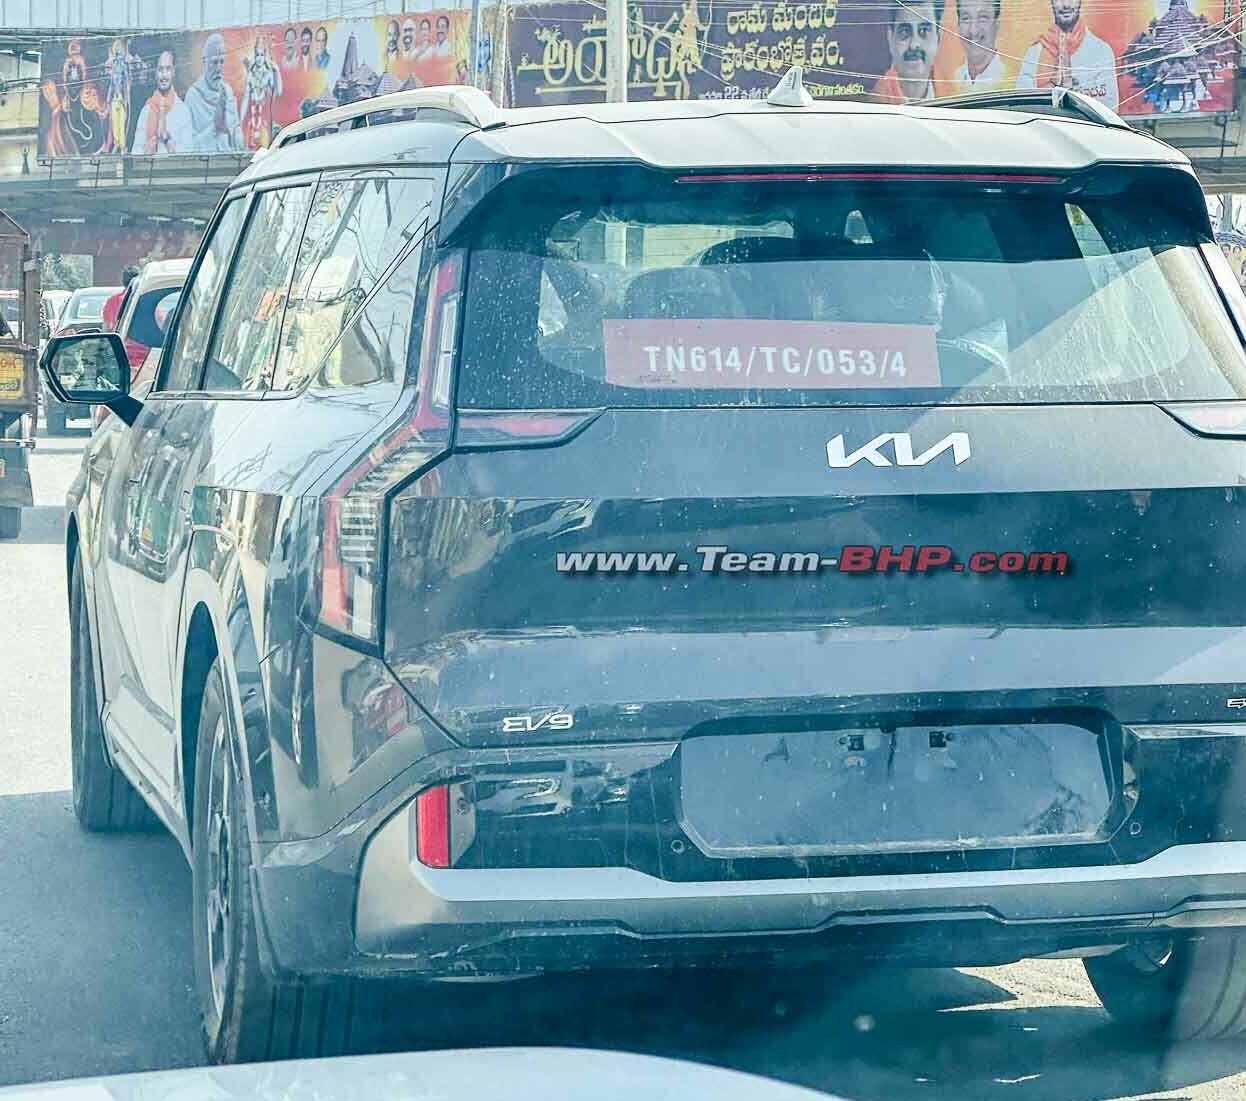 Kia EV9 in india rear